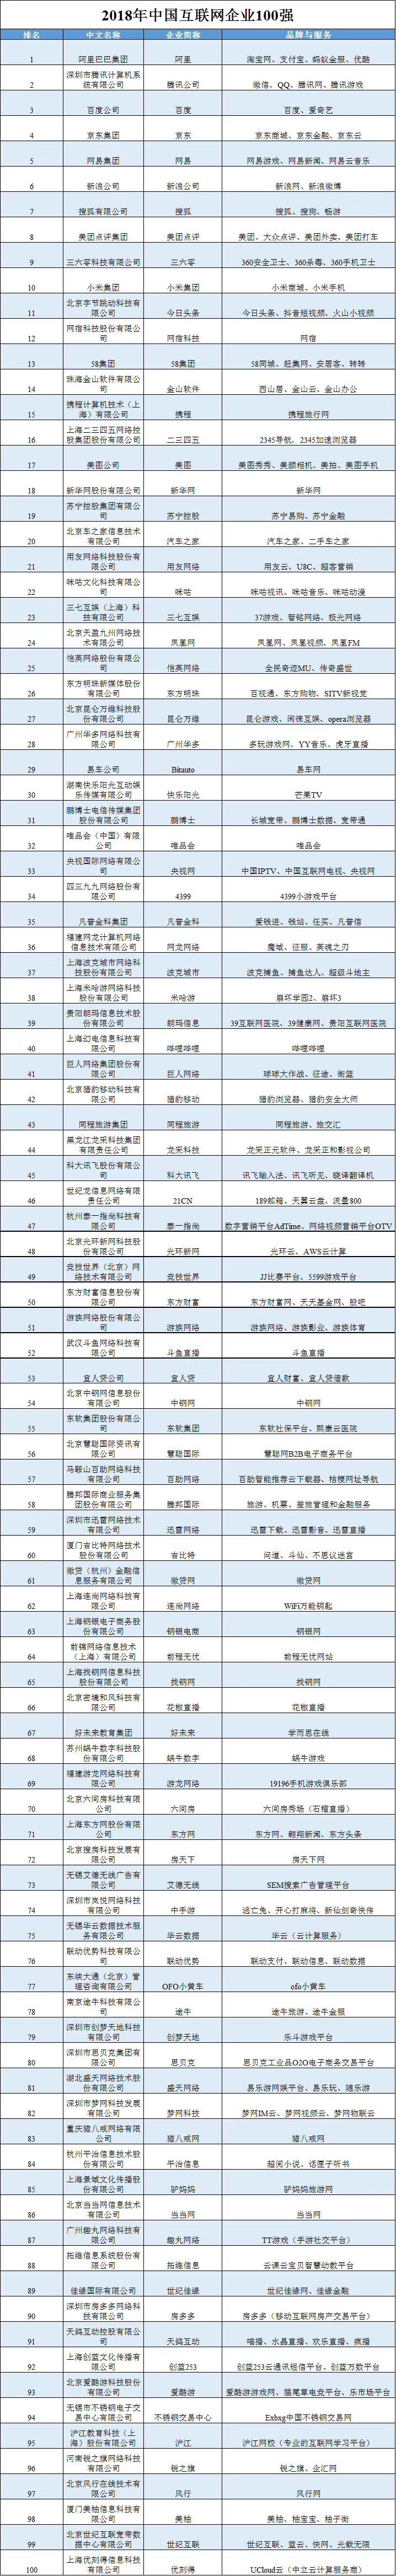 2018年中国互联网企业100强榜单揭晓 阿里巴巴第一腾讯第二